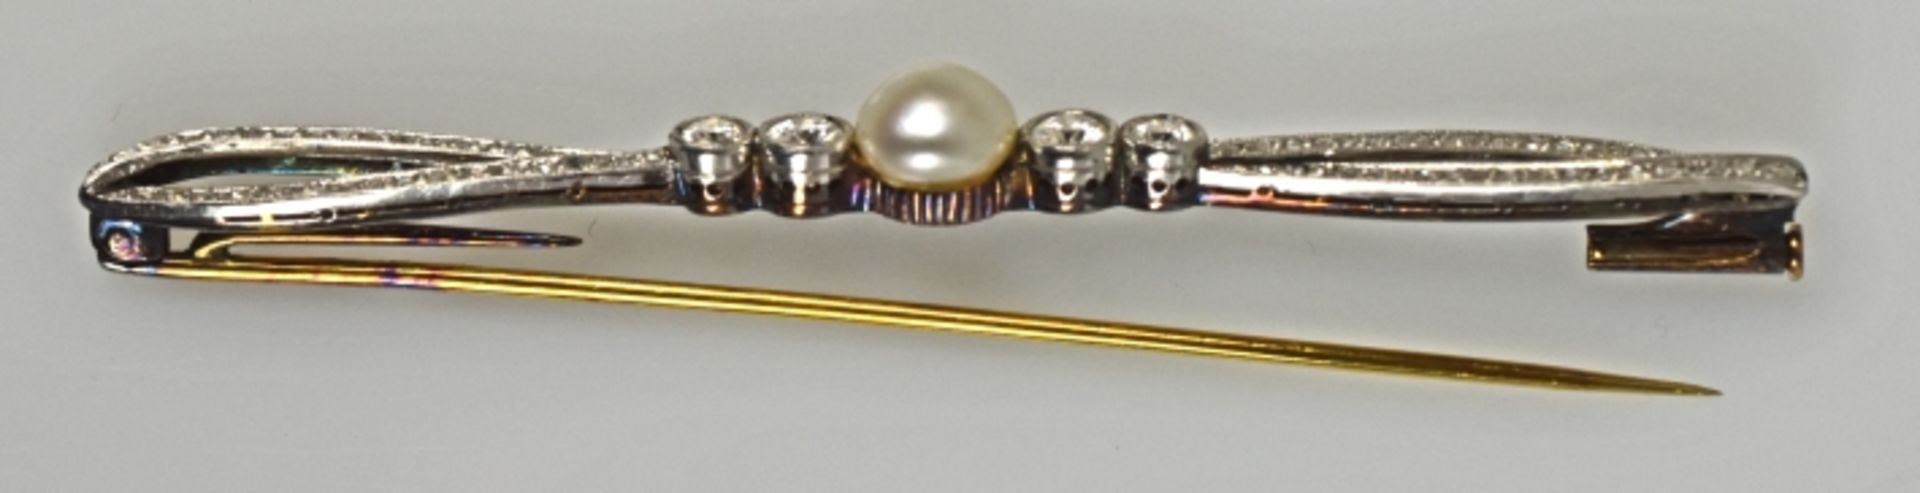 SCHLEIFENBROSCHE Bänder besetzt mit kleinen Diamanten, in der Mitte 4 grössere Diamanten mit - Bild 2 aus 2